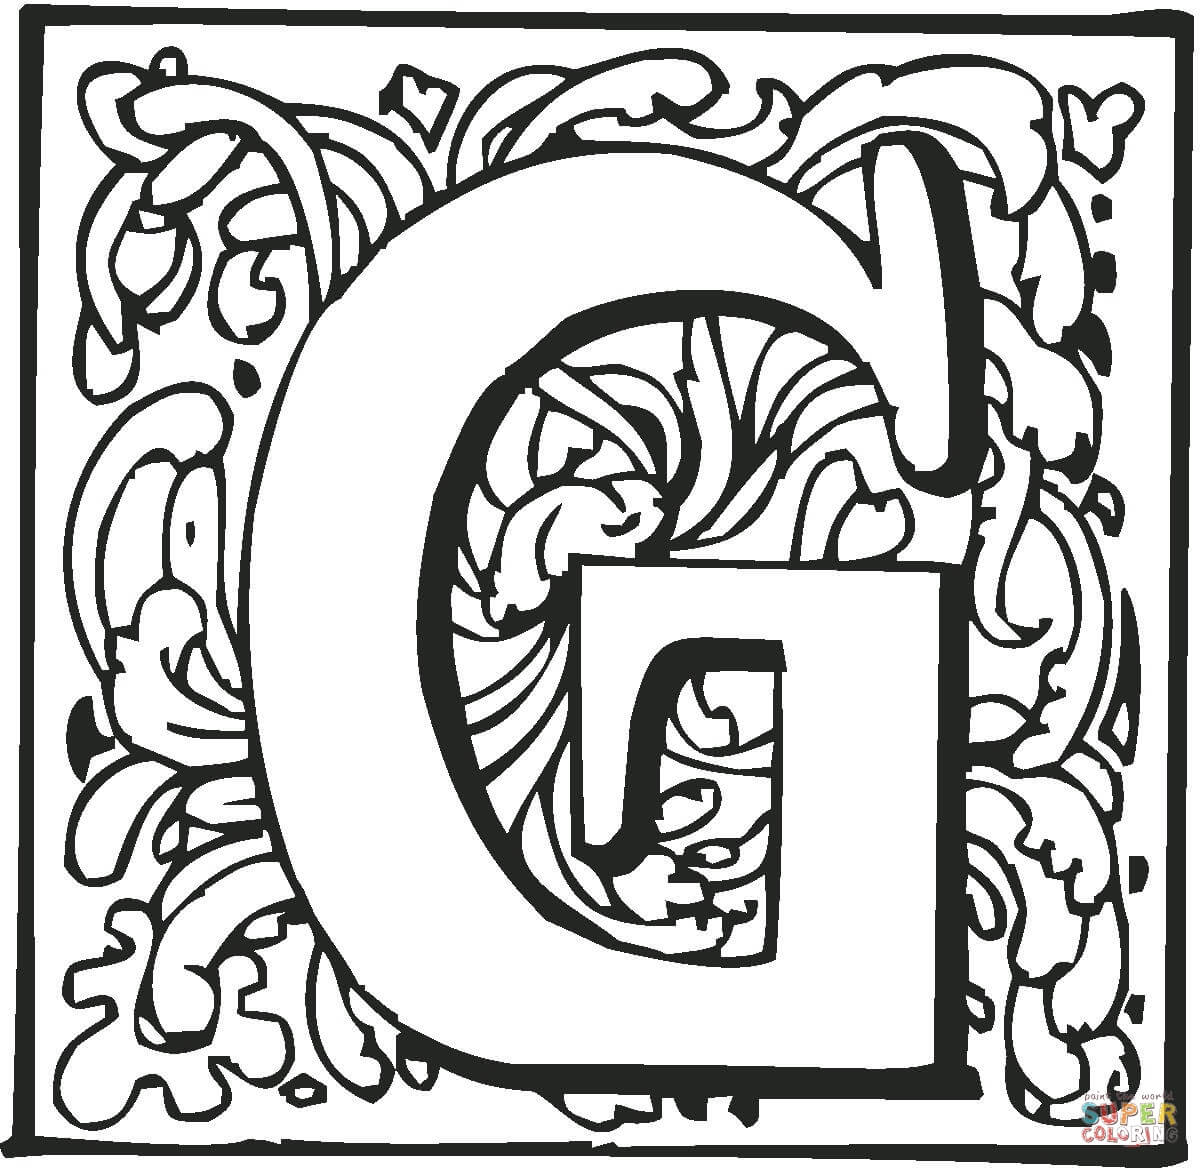 Letra G com Ornamento da Letra G